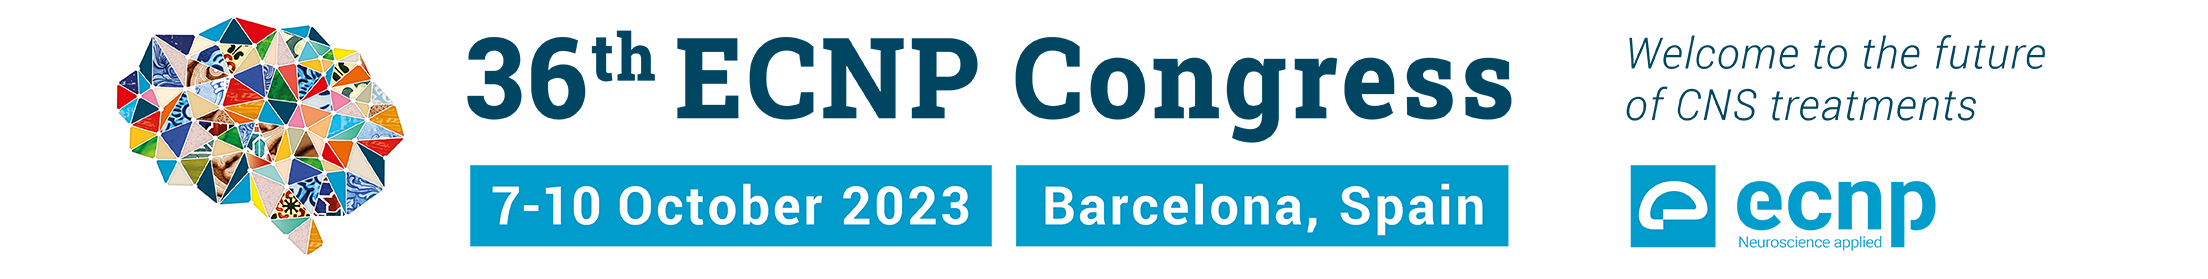 36th ECNP Congress 2023: website top banner 